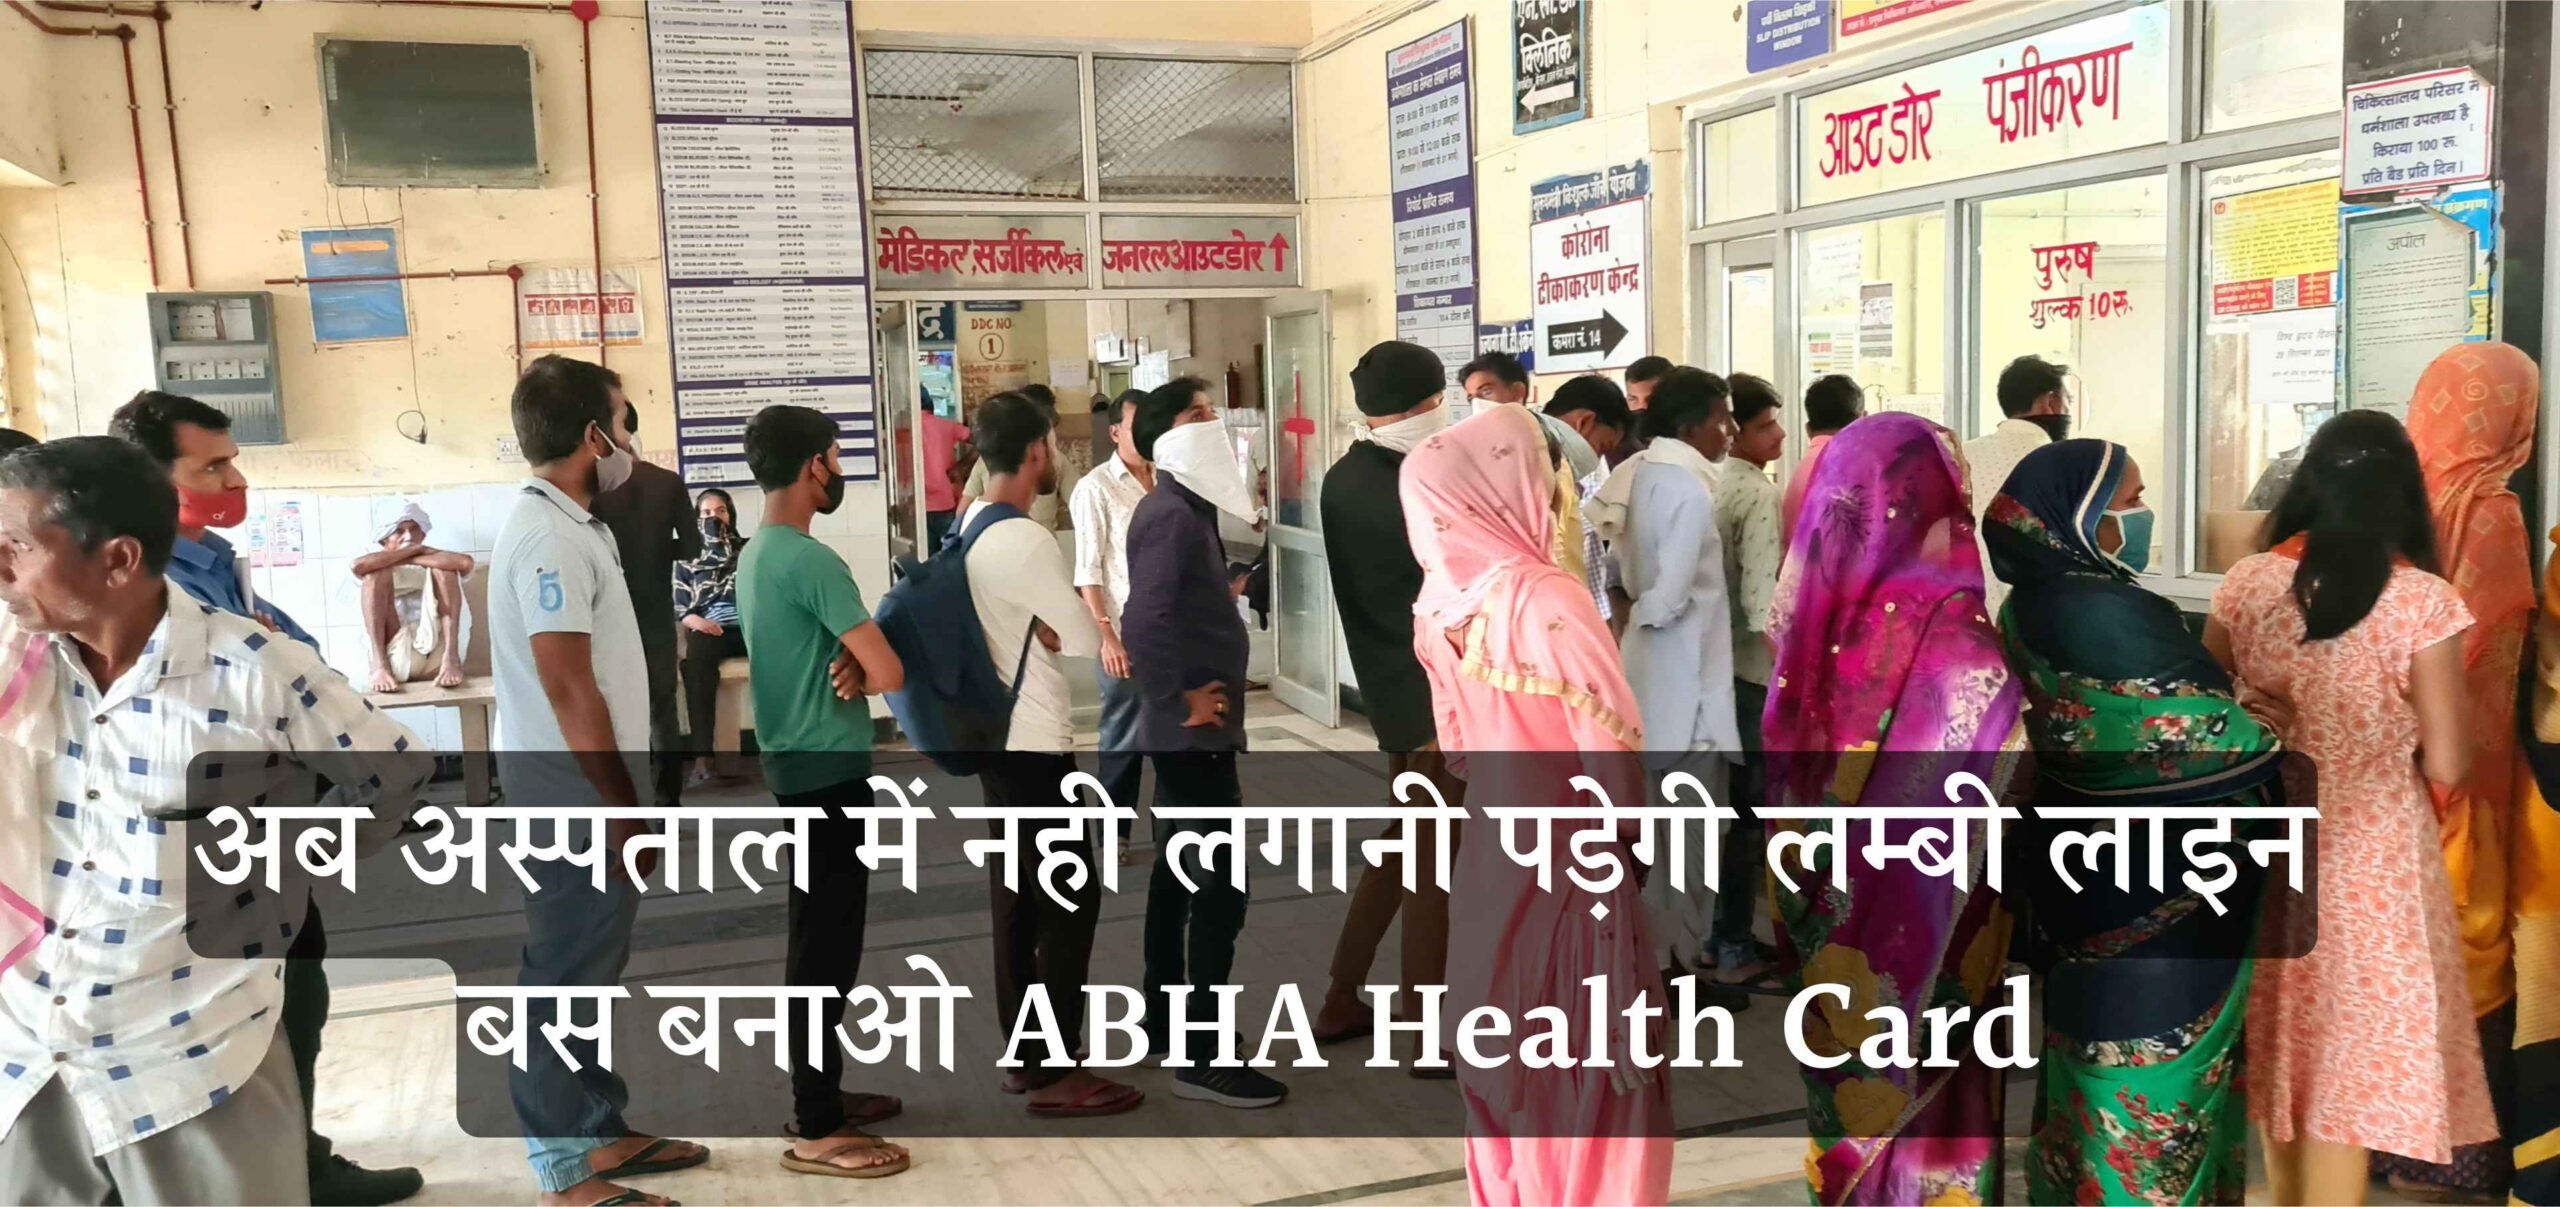 अस्पताल की लंबी लाइन से छुटकारा पाना है तो बनवाएं ABHA Health Card, जानिए तरीका | ABHA Health Card In Hindi